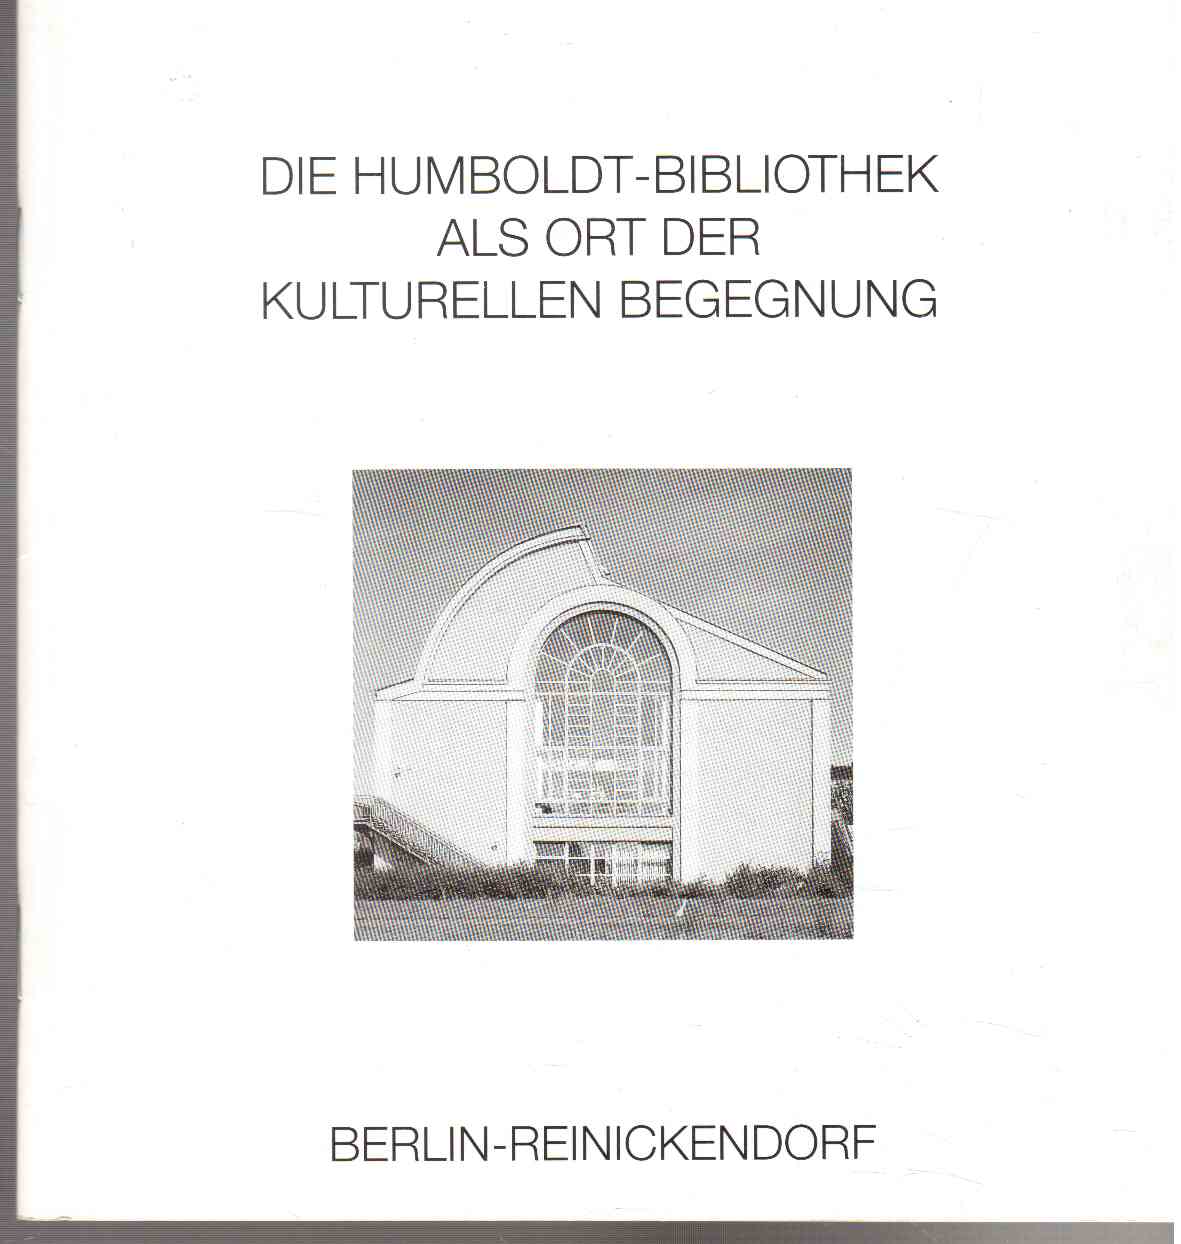 Die neue Humboldt-Bibliothek als Ort der kulturellen Begegnung.